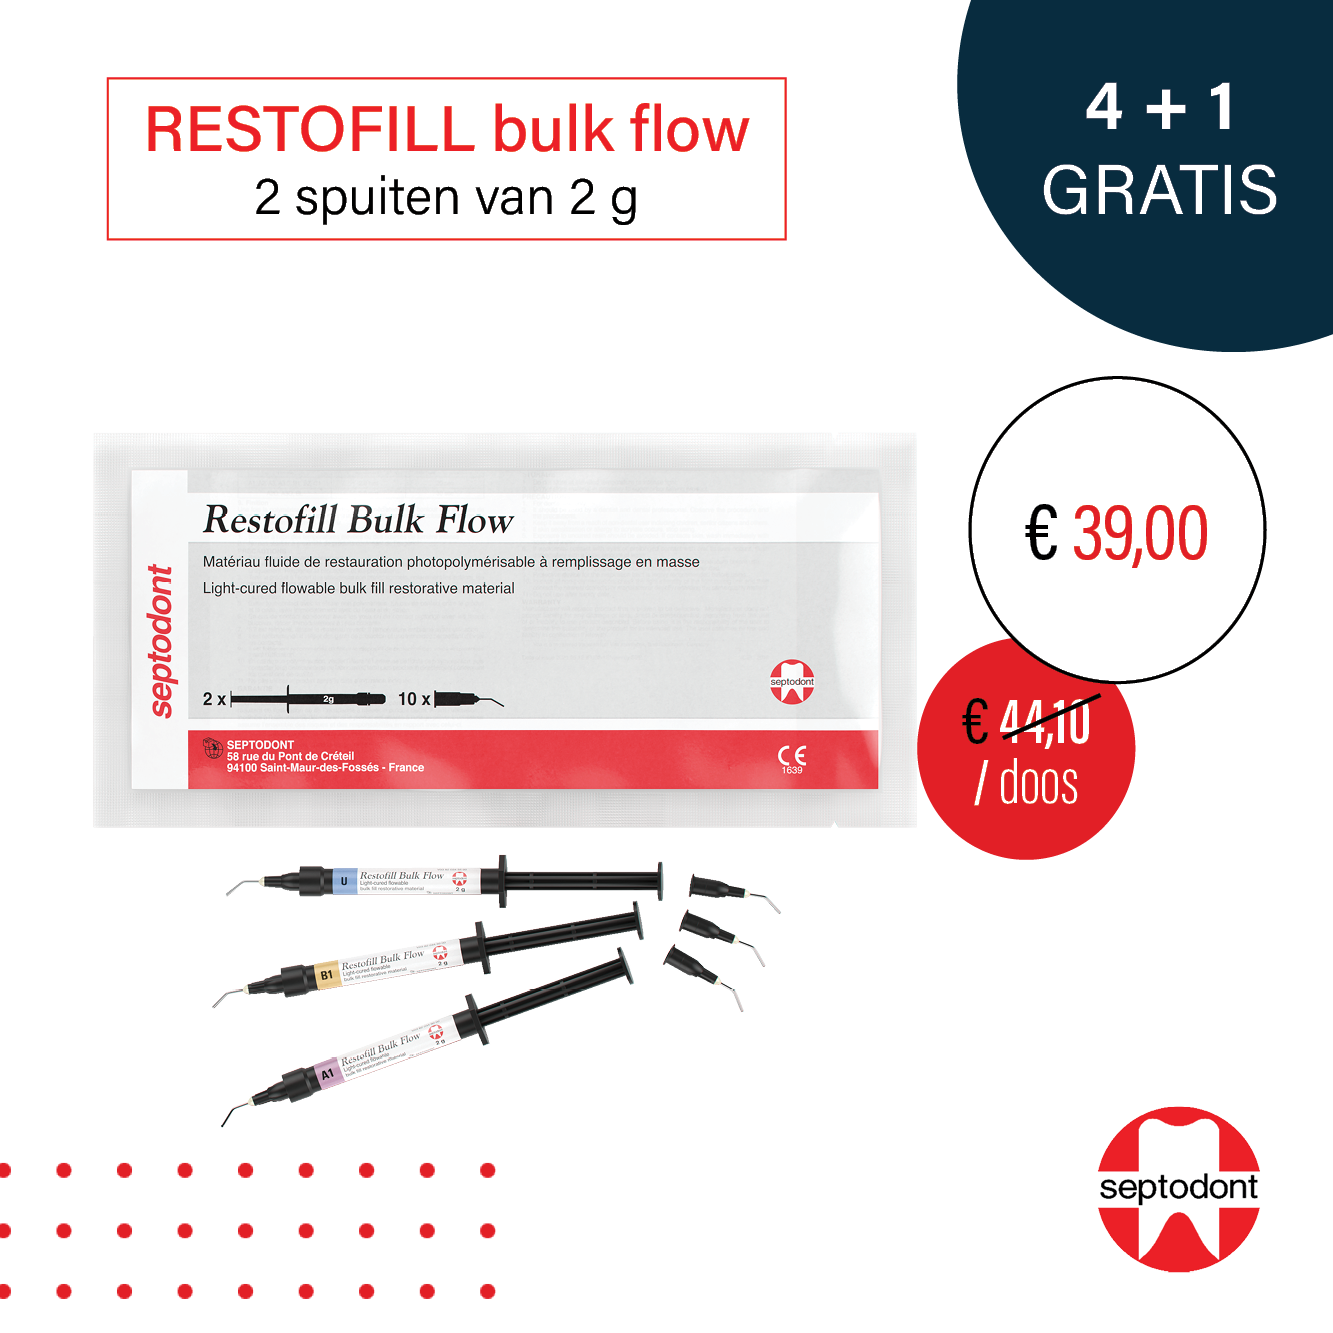 Restofill bulk flow promotie september